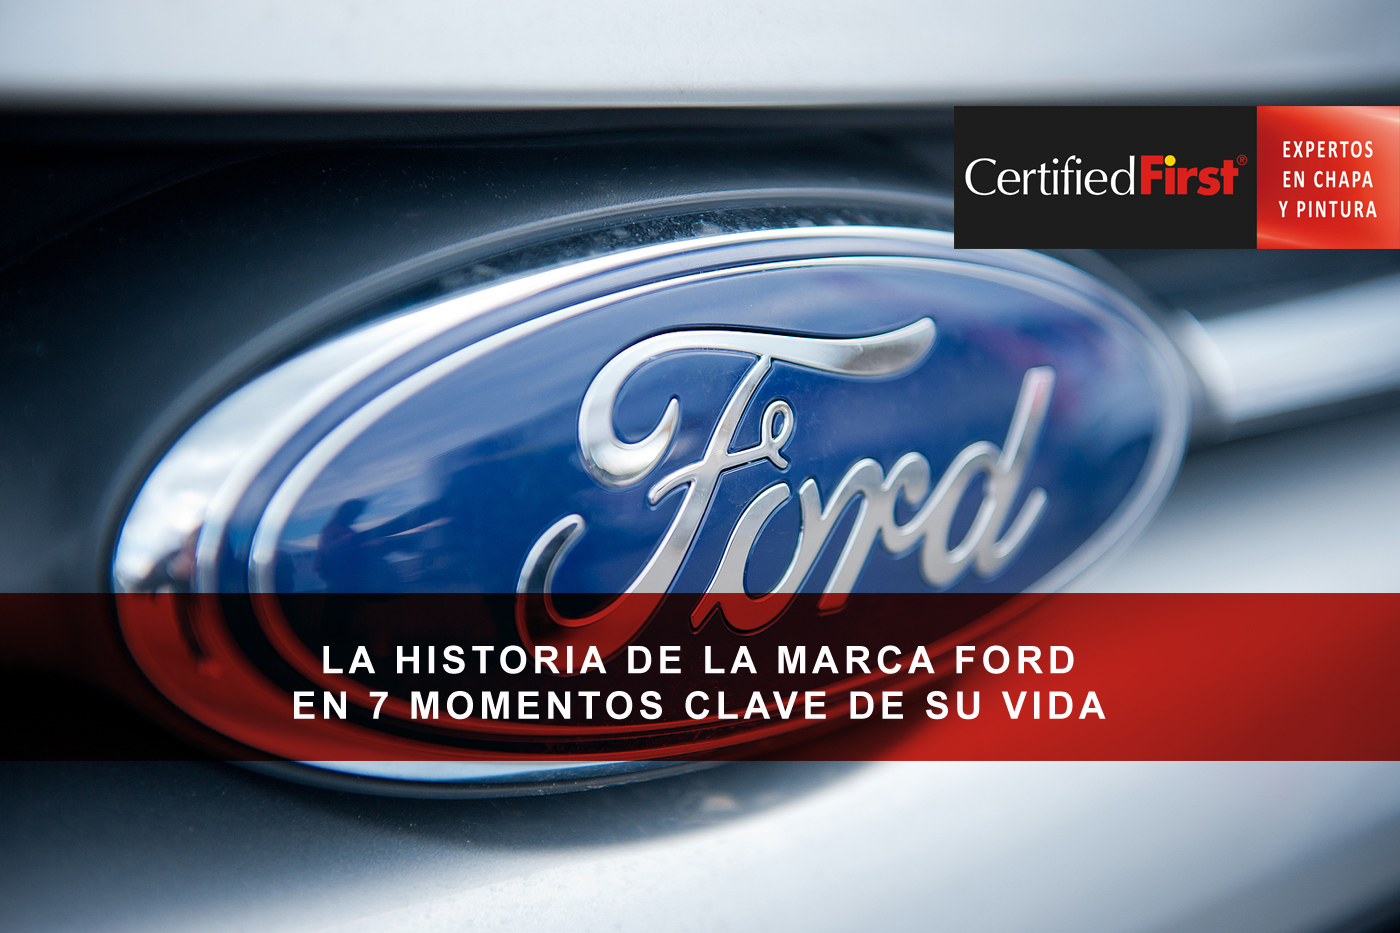 La historia de la marca Ford en 7 momentos clave de su vida